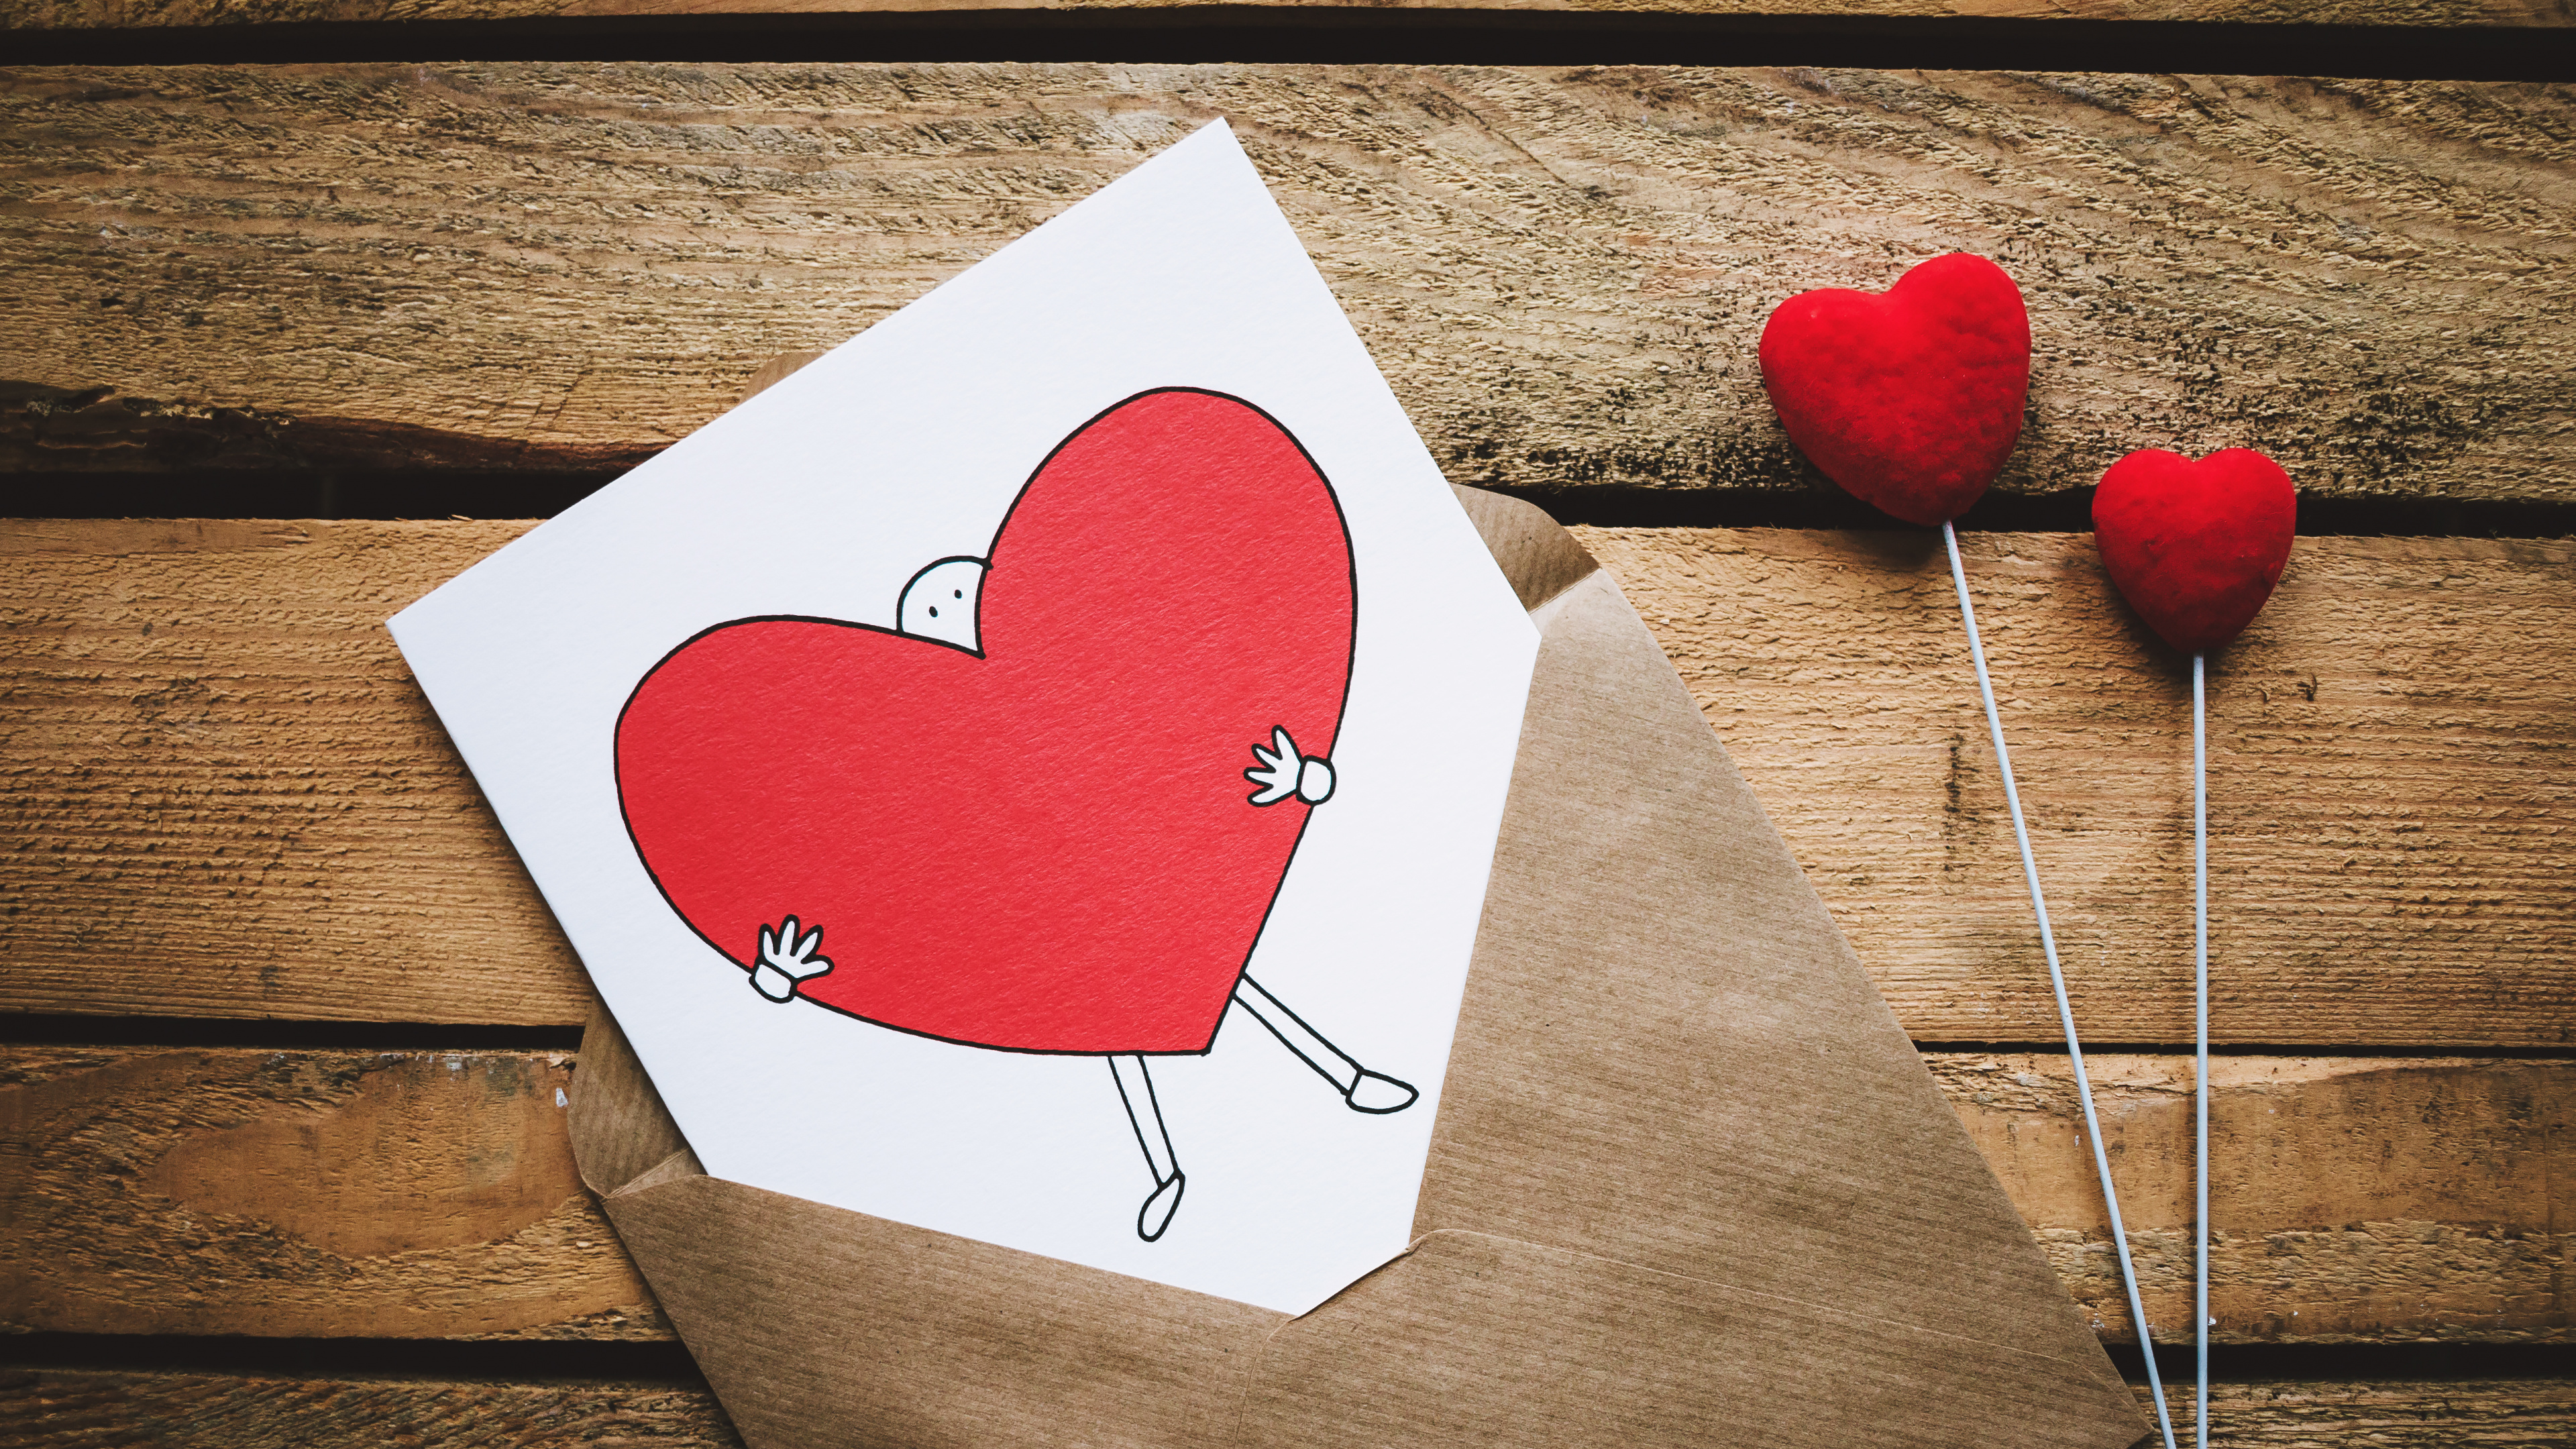 情书, 浪漫, 心脏, 红色的, 爱情 壁纸 3840x2160 允许